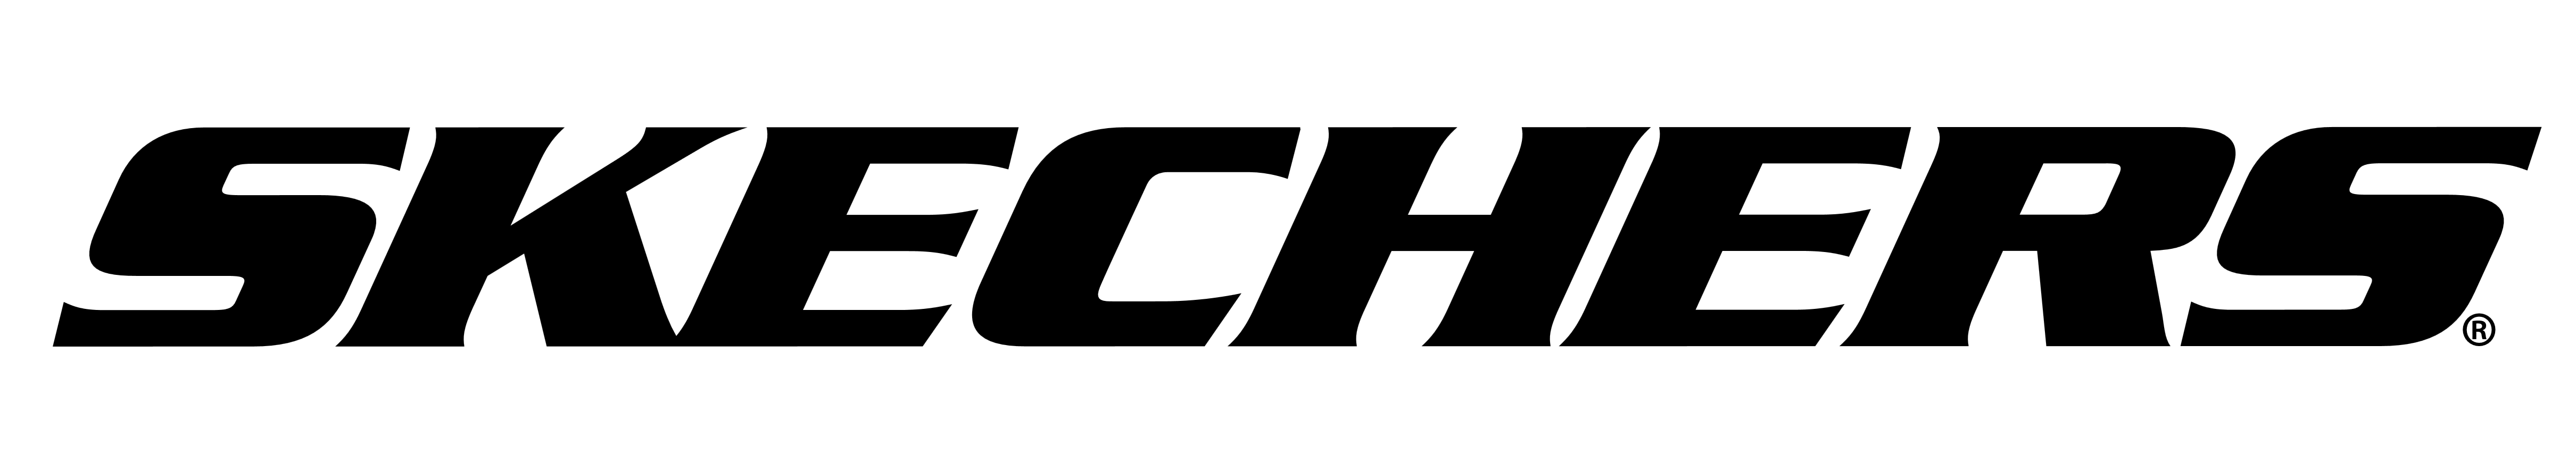 logo skechers vector